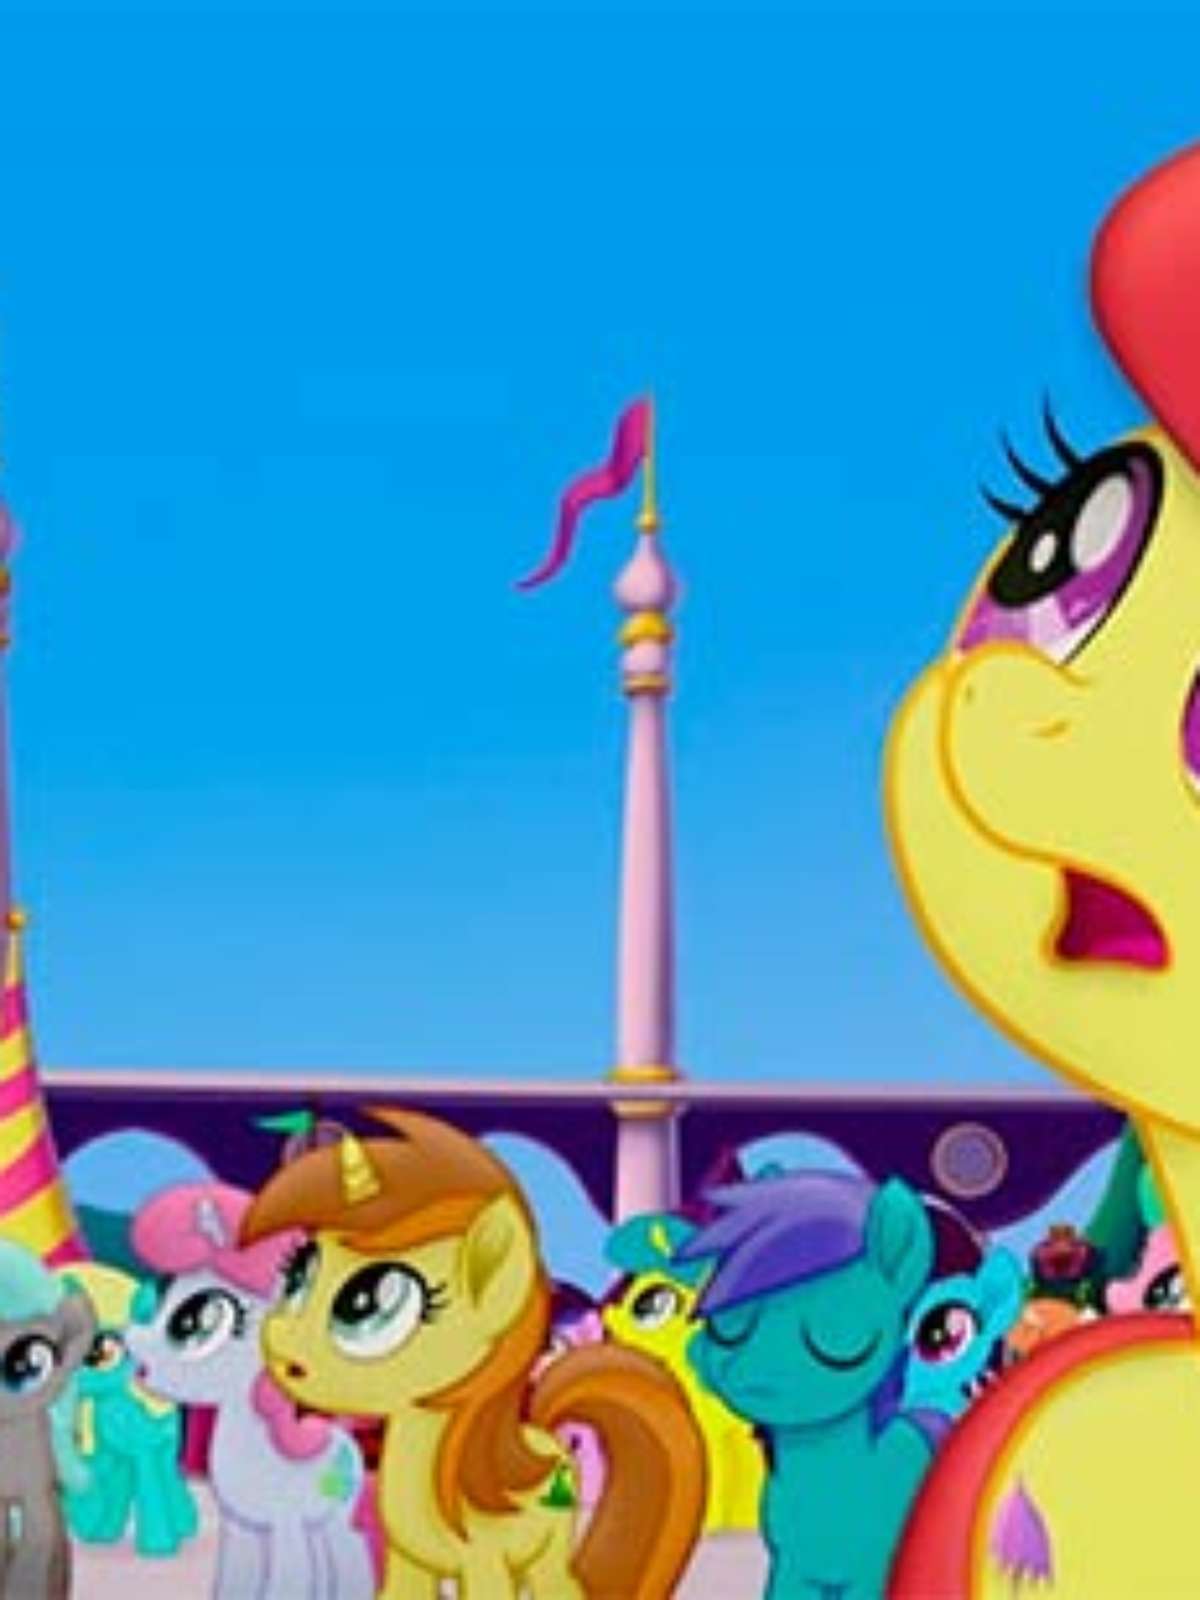 Desenho 'My Little Pony' vai ganhar filme em 2017